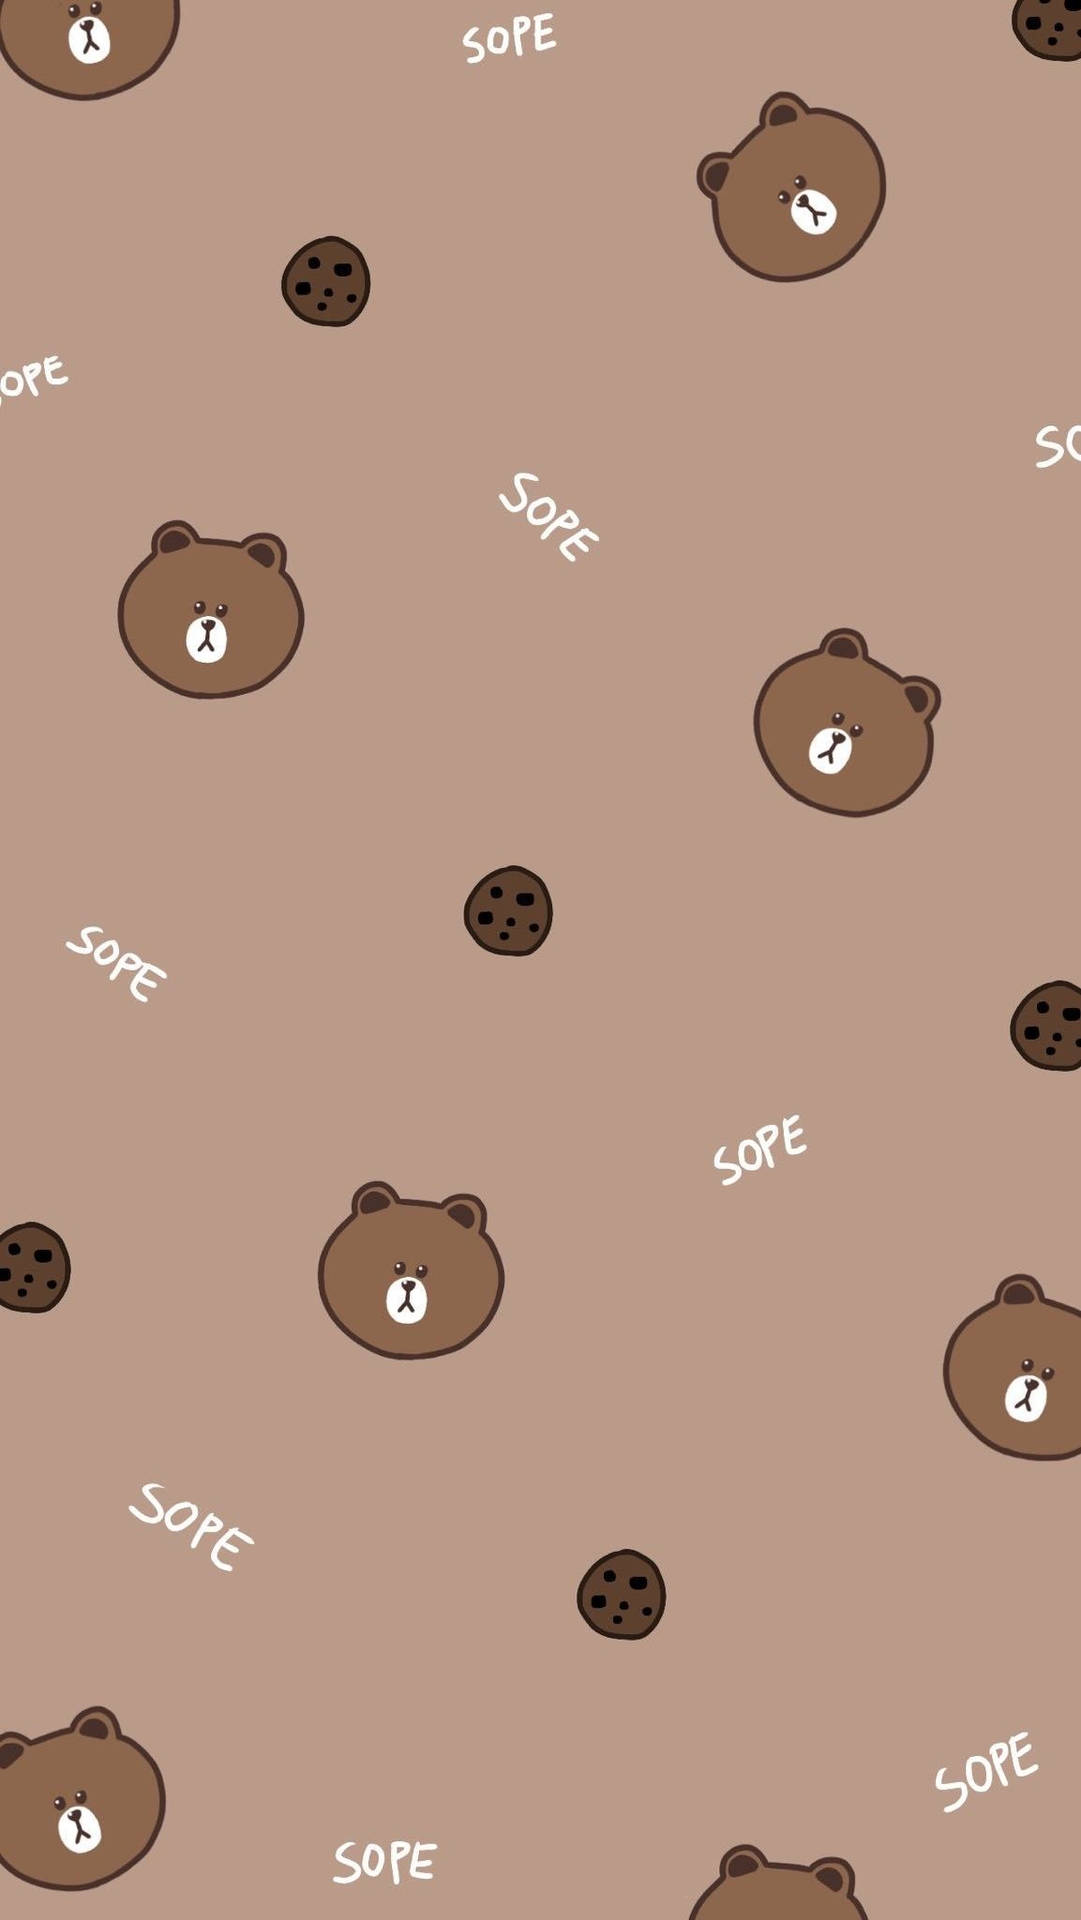 Cute Bear Sope Wallpaper